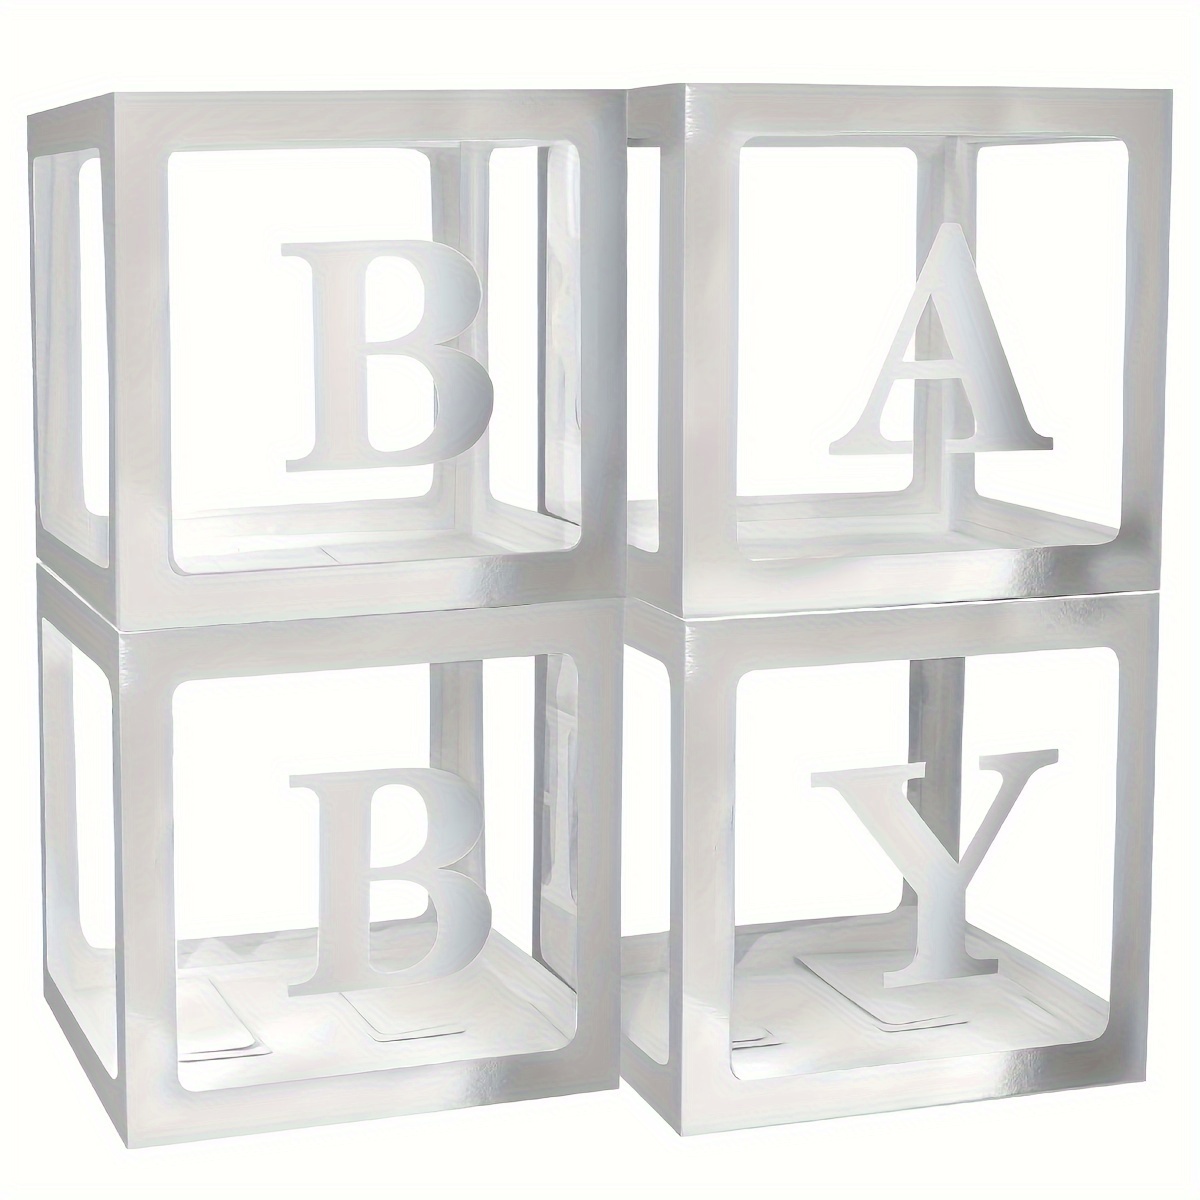 Cajas de bebé con letras para baby shower cajas de bloques transparentes  para decoración de baby shower caja de globos transparente para baby shower